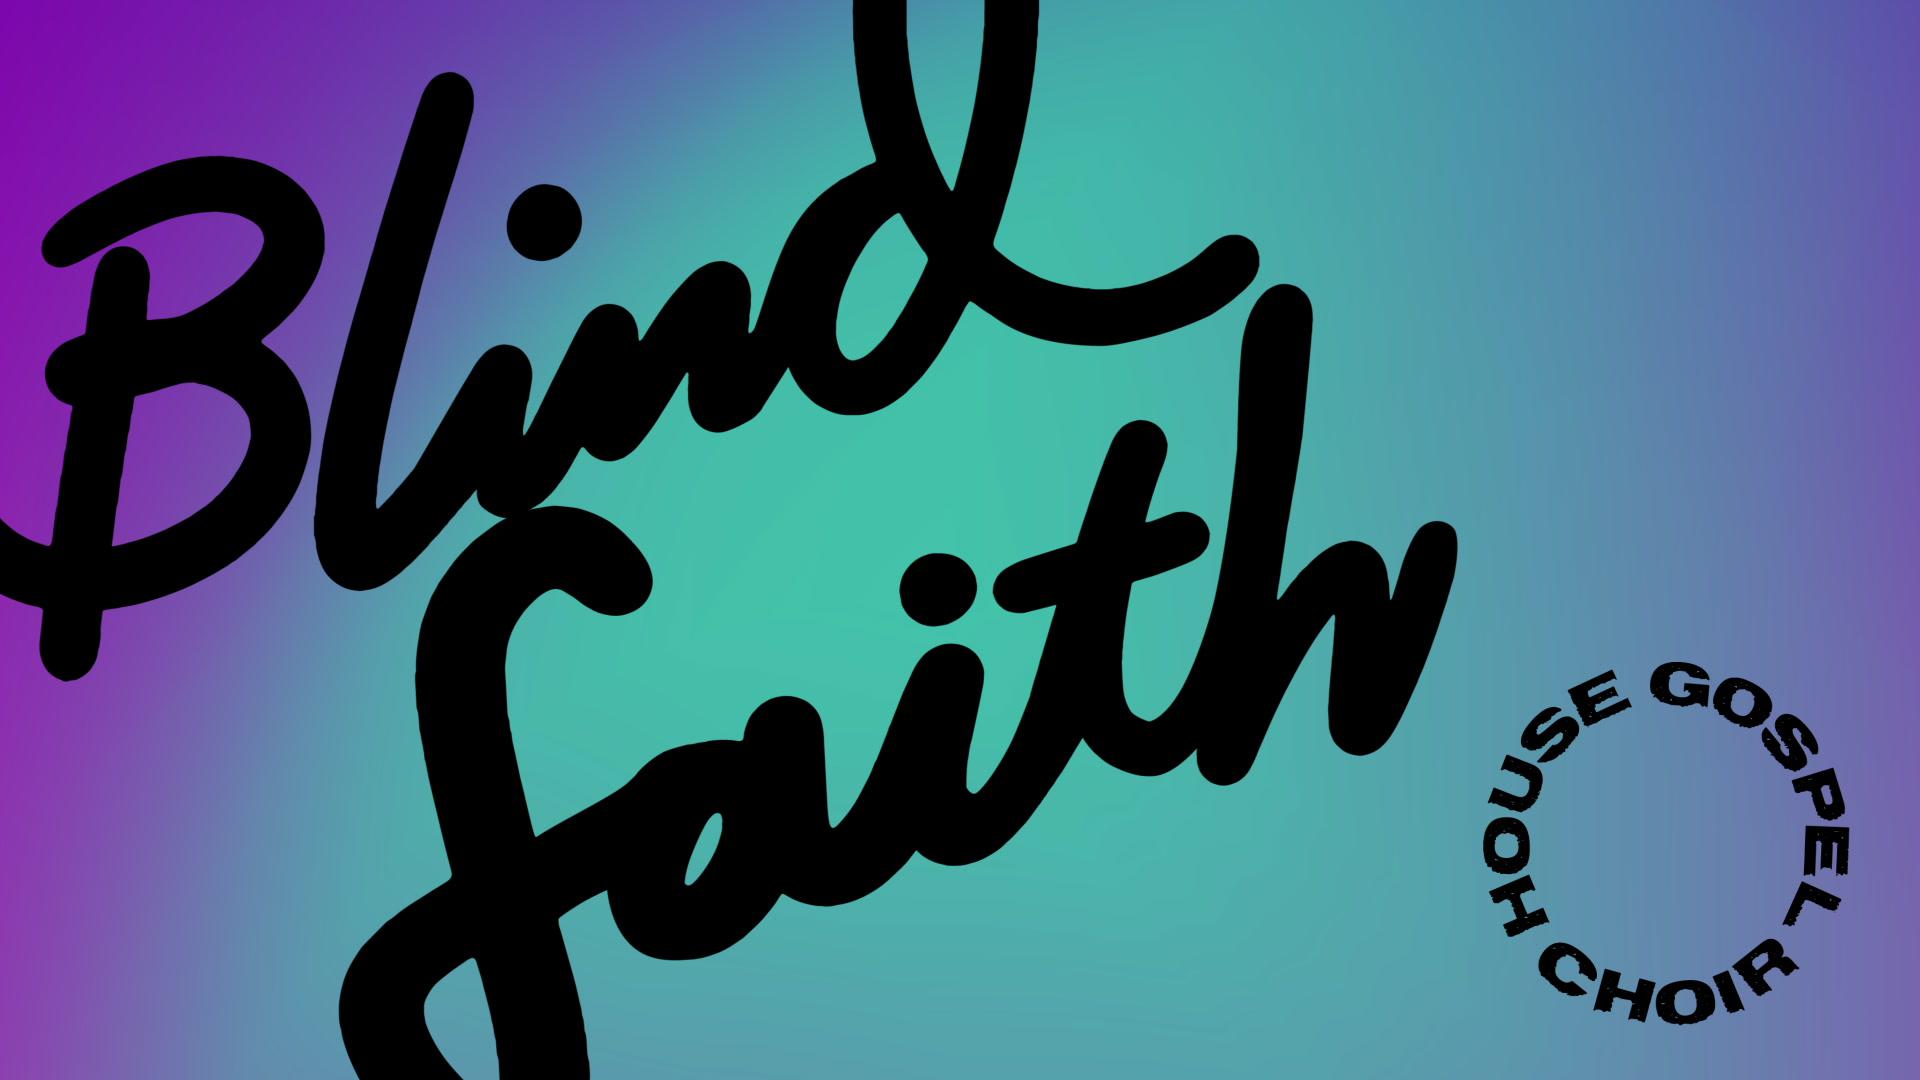 House Gospel Choir - Blind Faith (Audio)